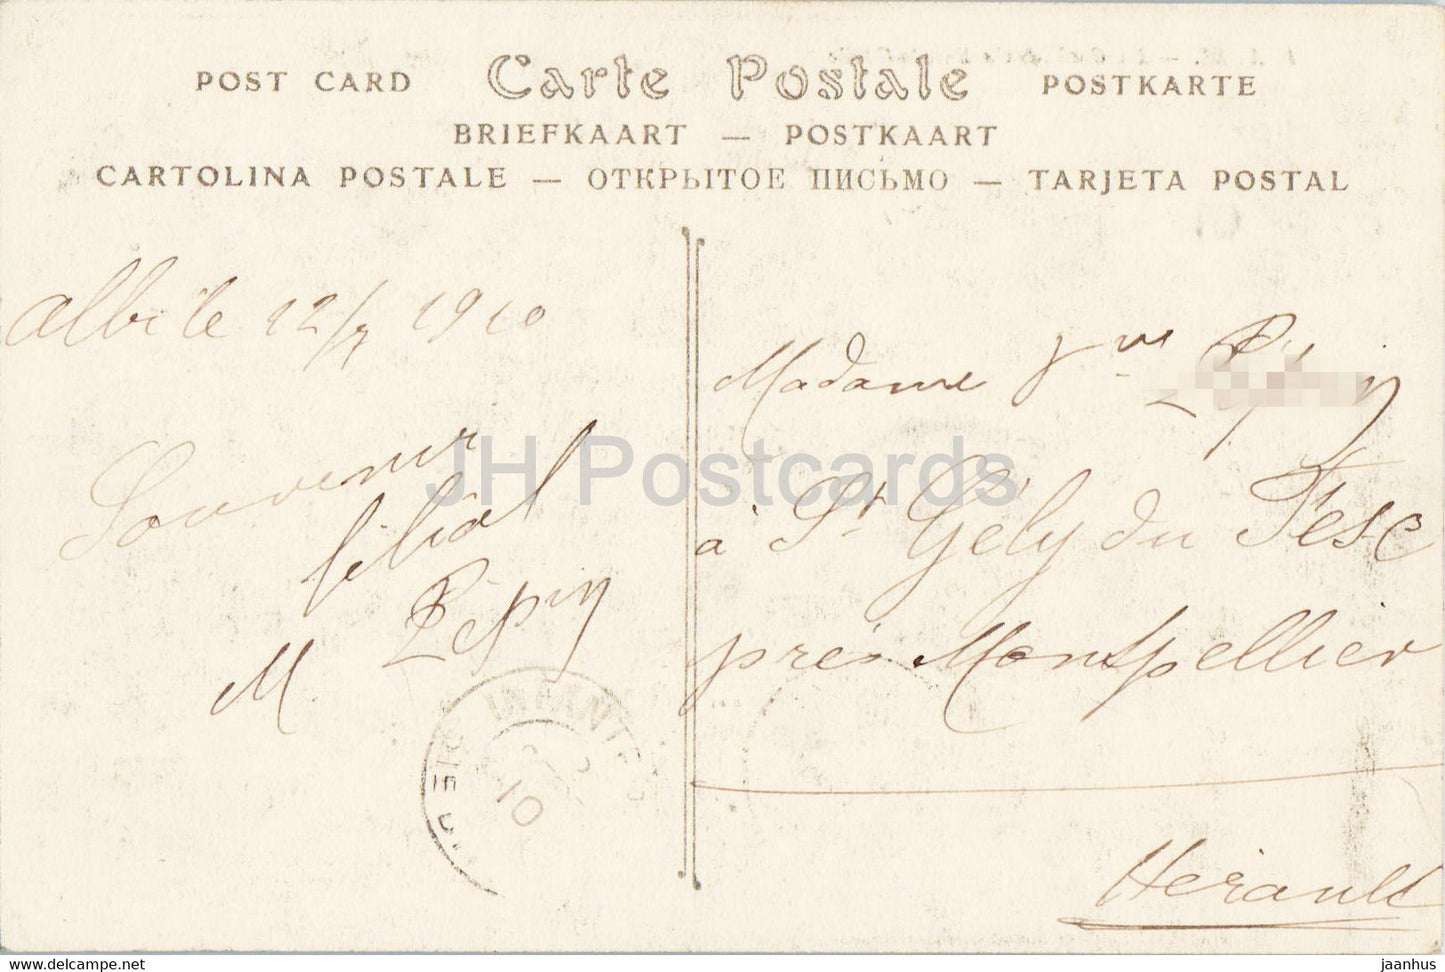 Albi - La Cathedrale Sainte Cecile - Kathedrale - 1 - alte Postkarte - 1910 - Frankreich - gebraucht